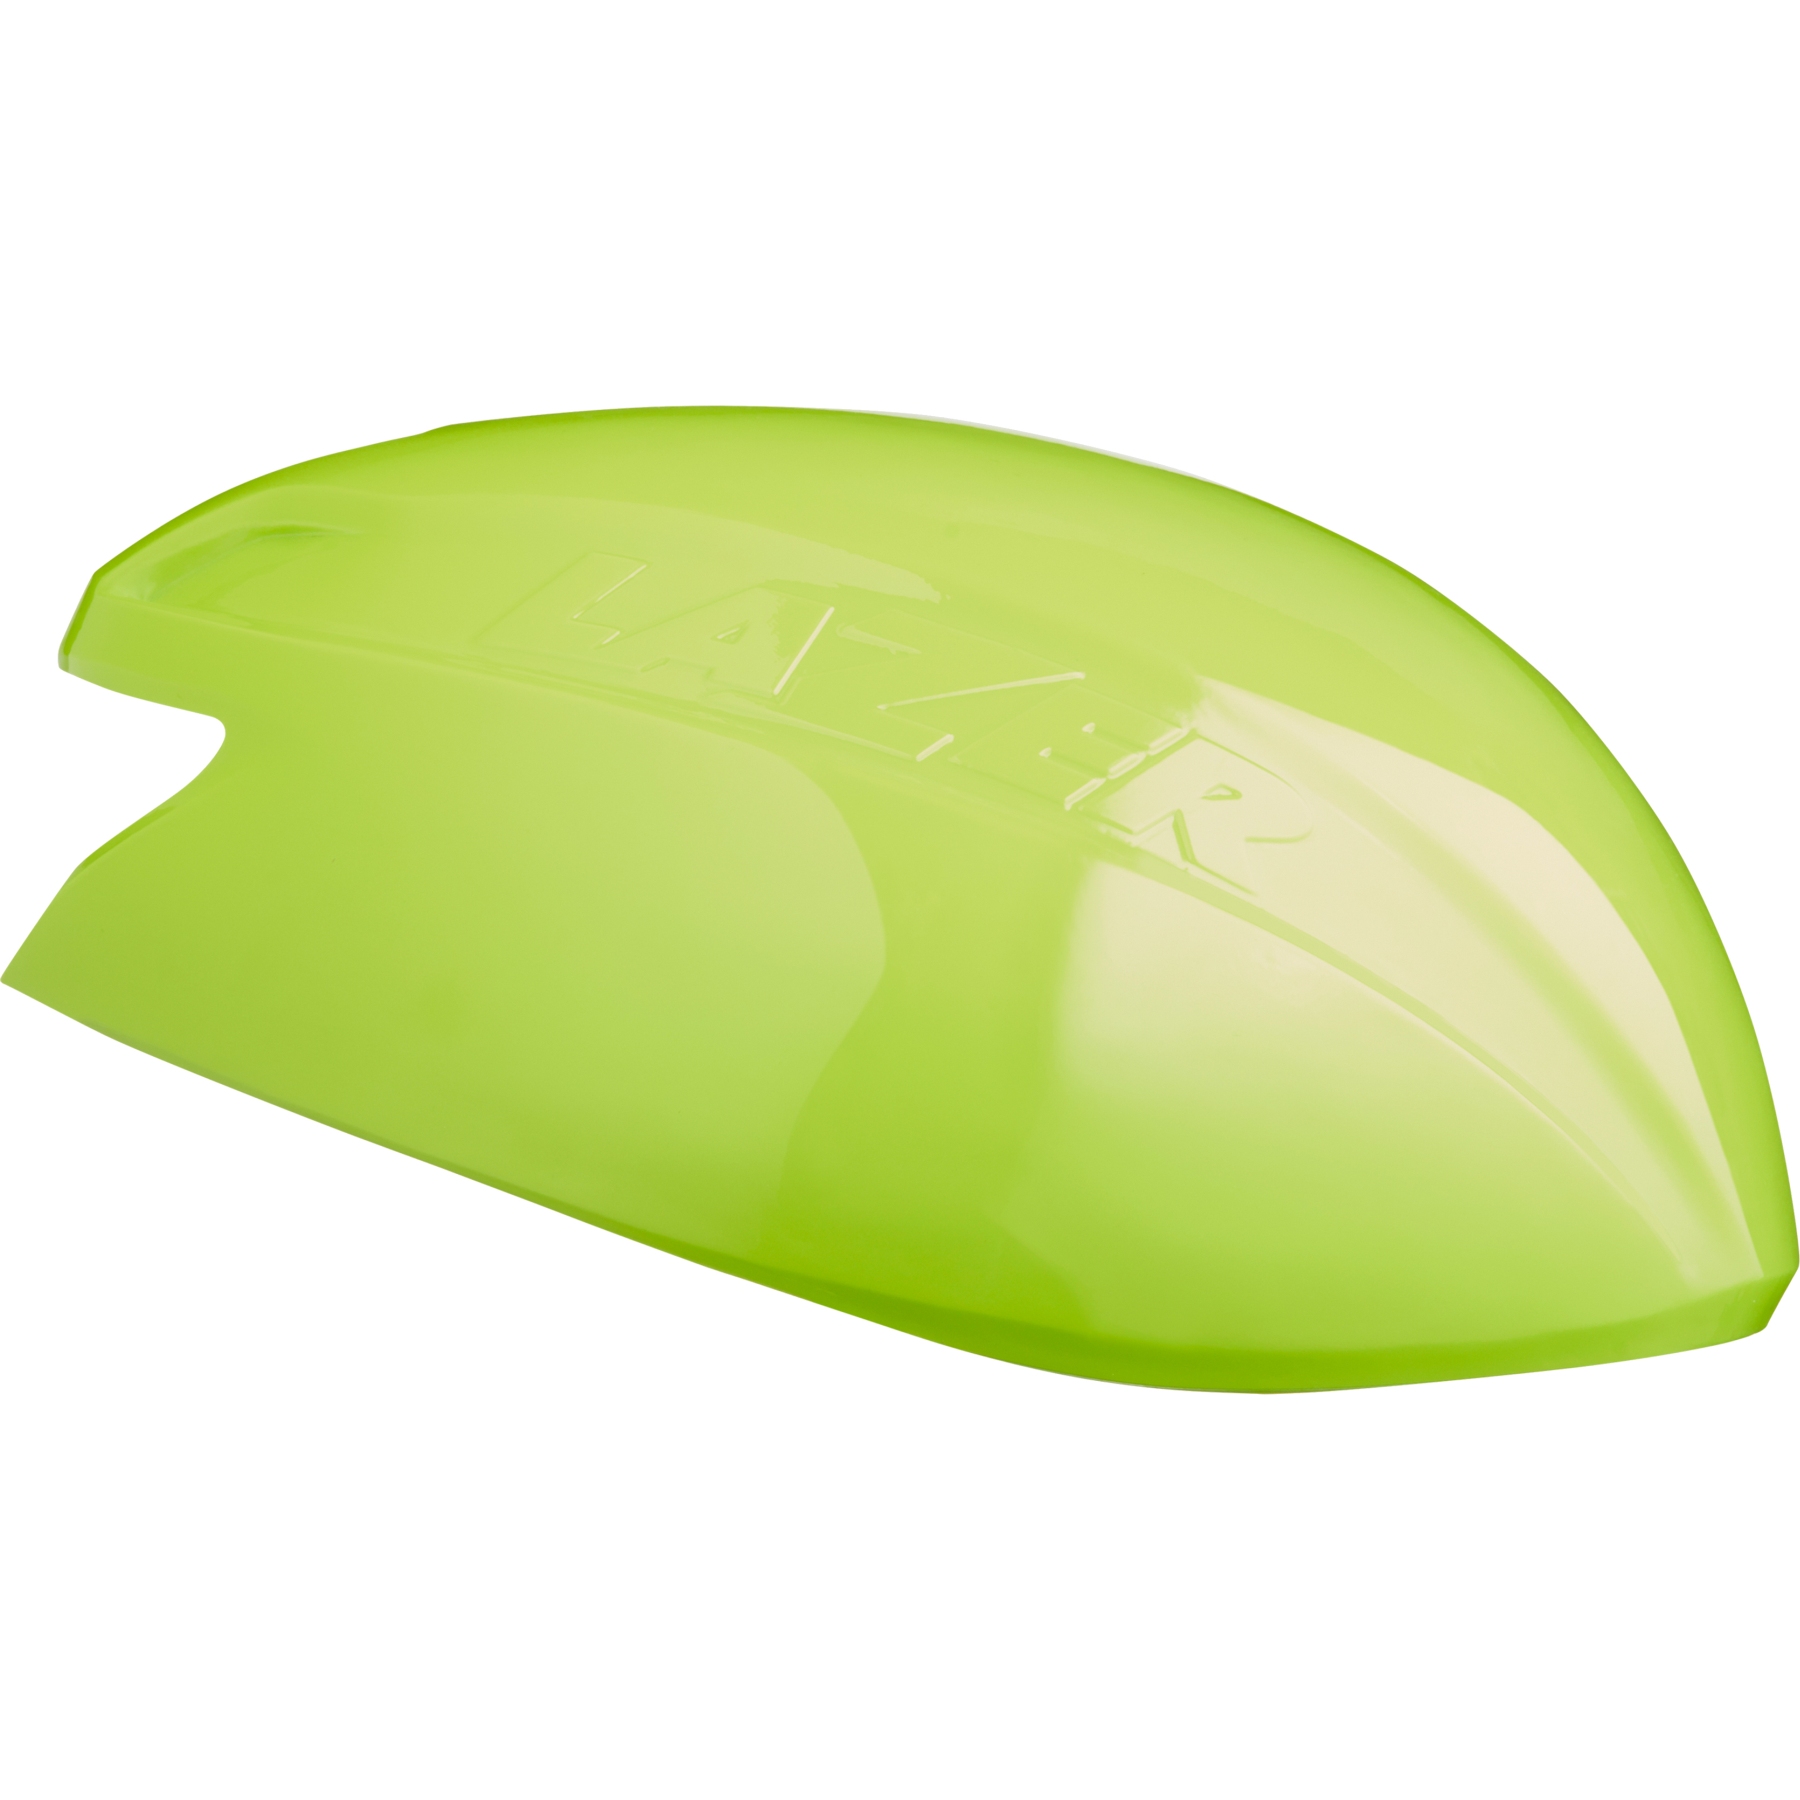 Produktbild von Lazer Aeroshell Abdeckung für Sphere Helm - flash yellow